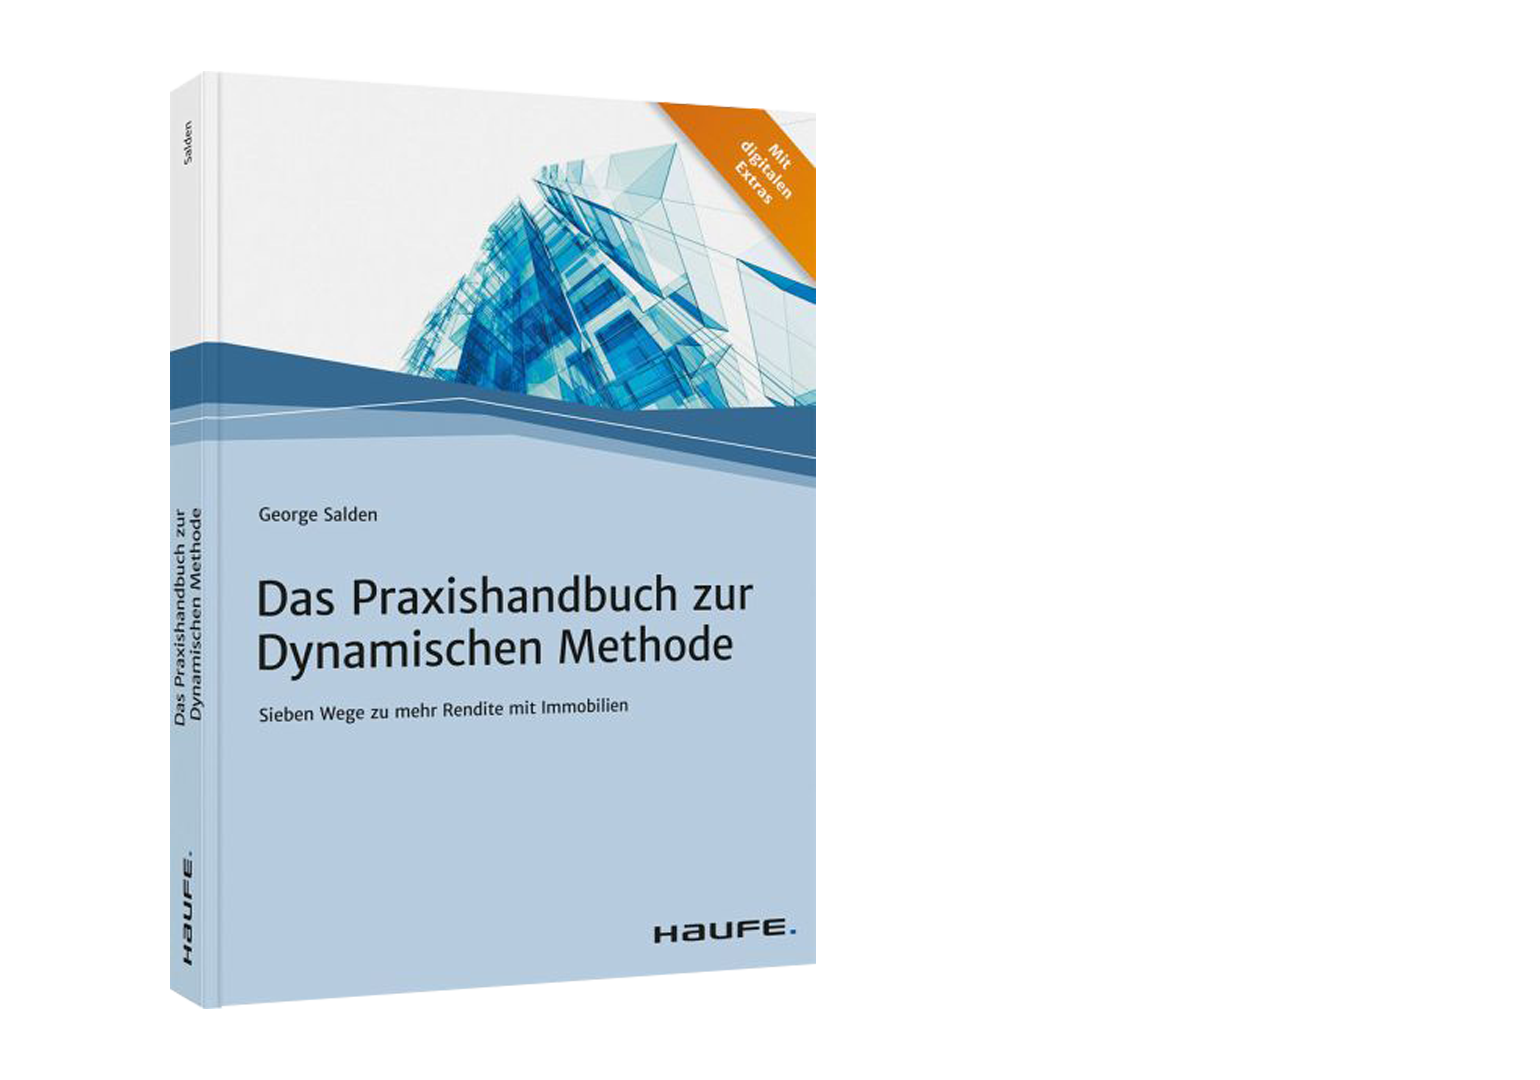 Das Praxishandbuch zur dynamischen Methode von George Salden jetzt im Haufe Verlag und auf Amazon verfügbar